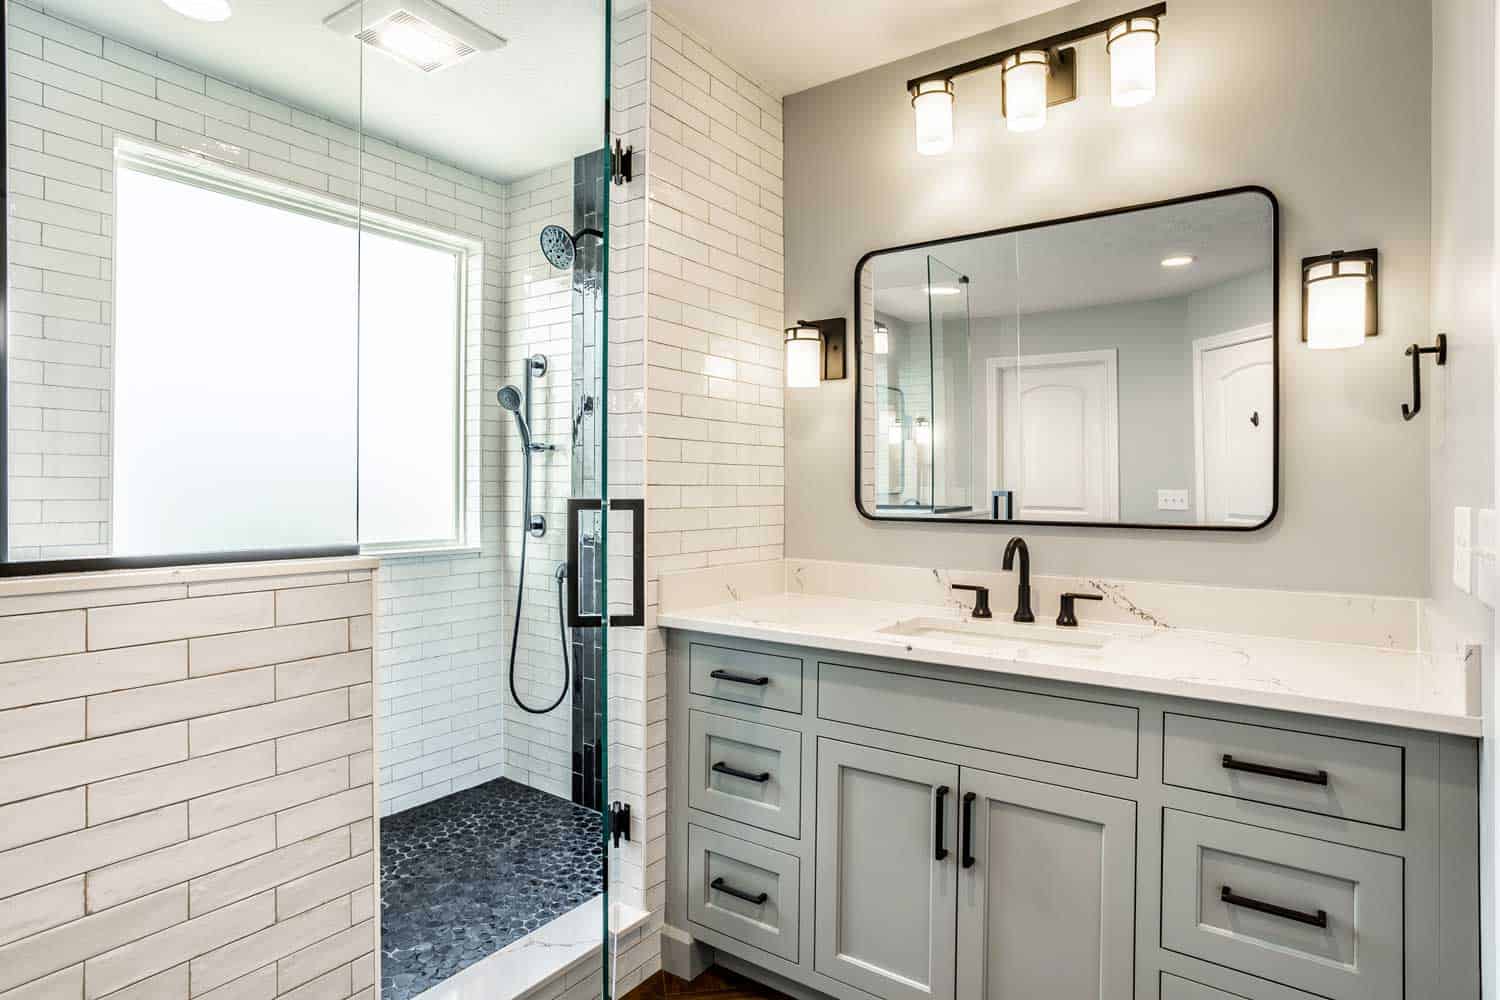 How Do You Budget For a Bathroom Remodel? - Nicholas Design Build